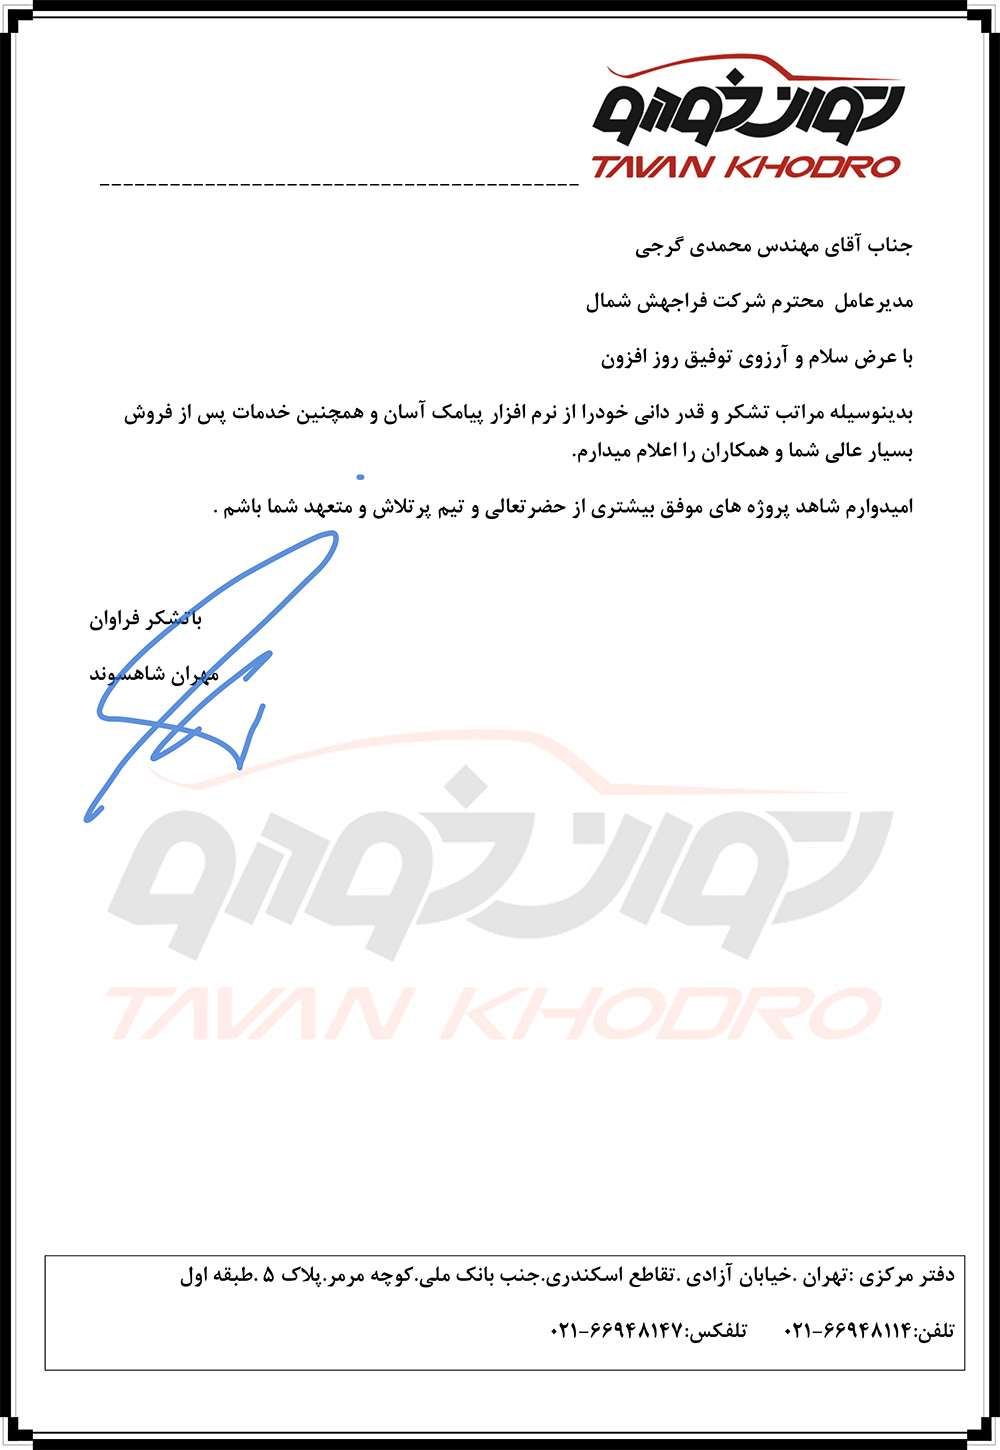 پیام تشکر آقای مهران شاهسوند ازشرکت توان خودرو تهران درباره نرم افزار ارسال پیامک آسان